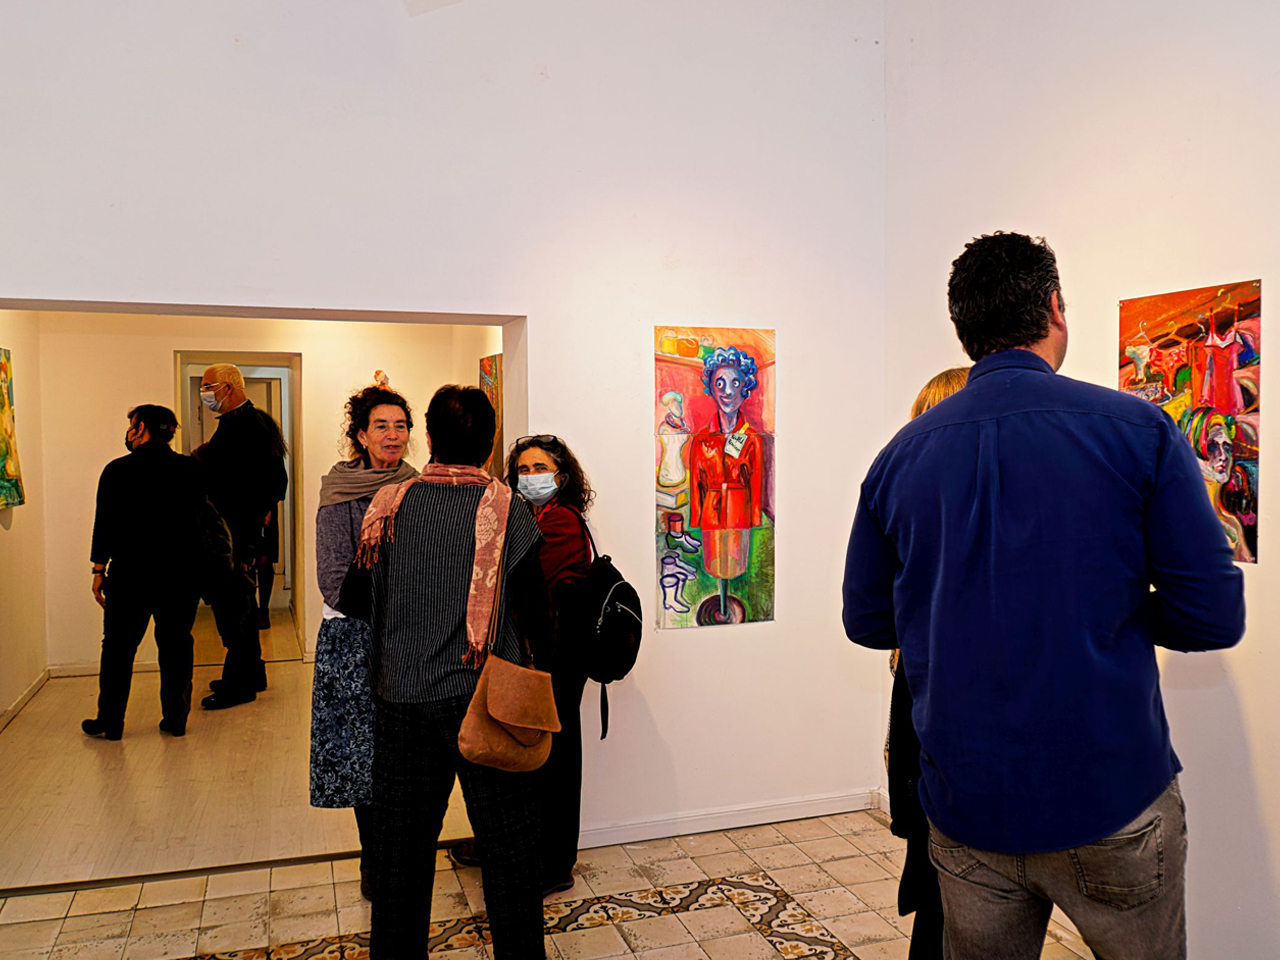 דינה בליך, פתיחת התערוכה הלבשה תחתונה, גלריה אגריפס 12, צילום אלכס זגרבה